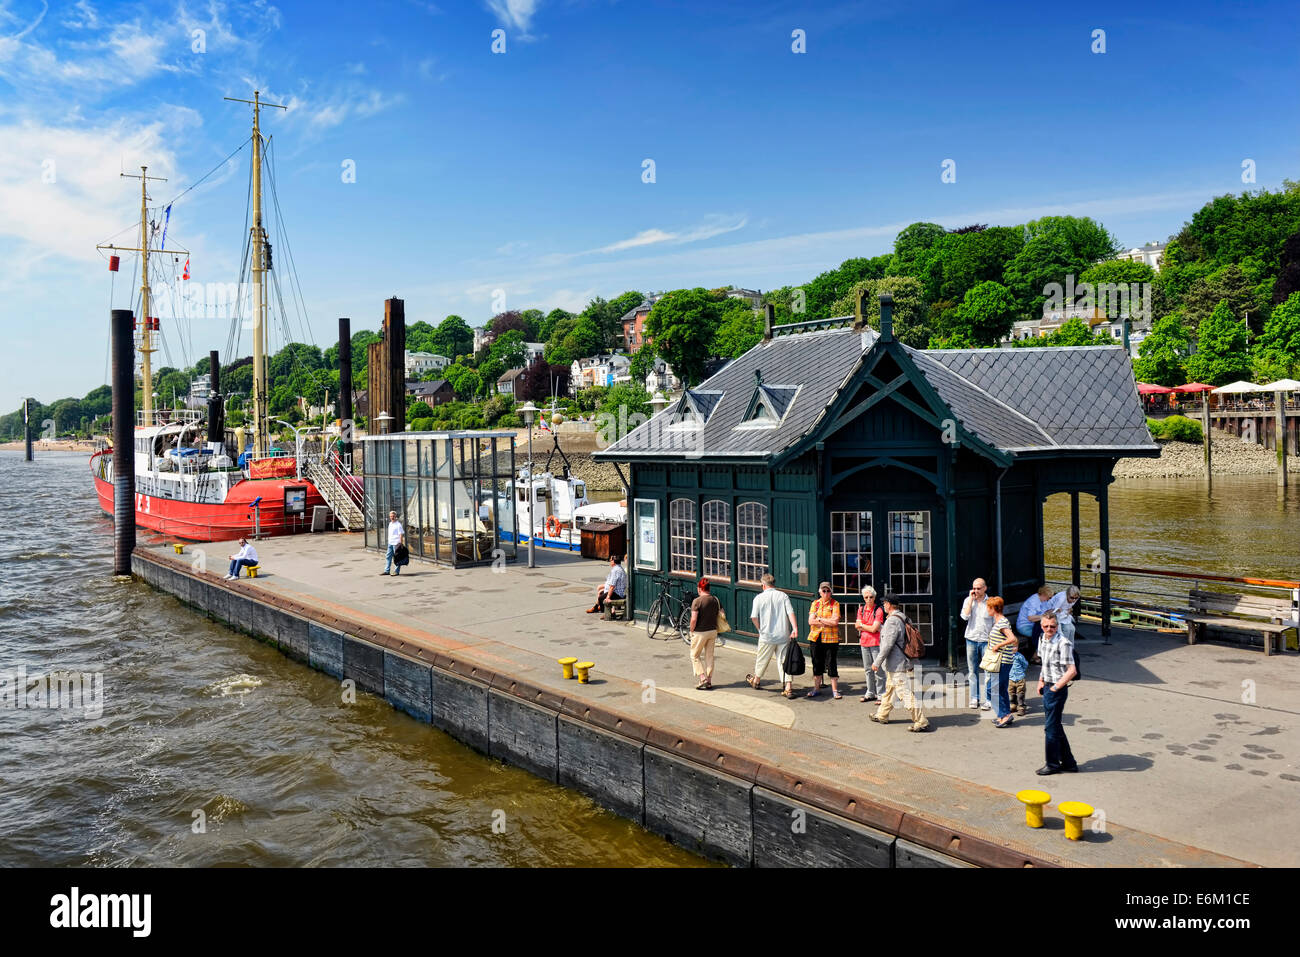 Museumshafen Övelgönne und Elbufer von Othmarschen in Hamburg, Deutschland, Europa Stock Photo